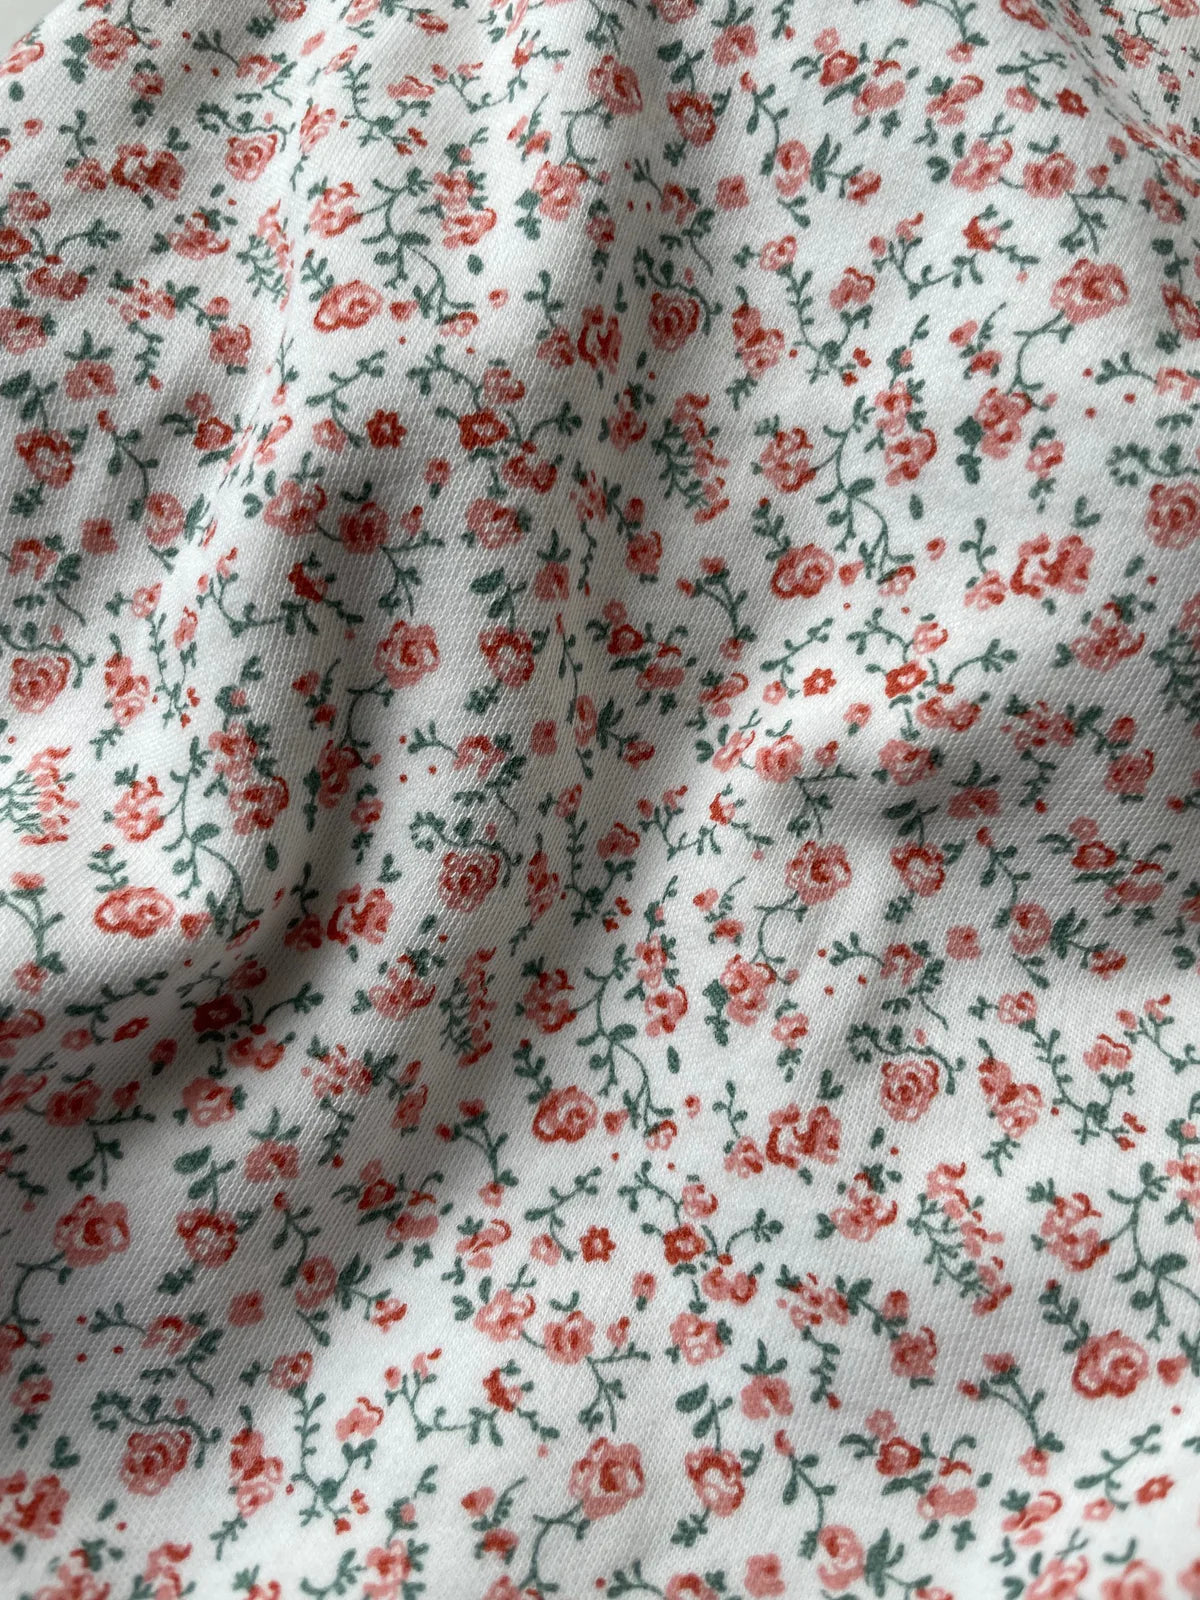 baby sleepsuit | rosy